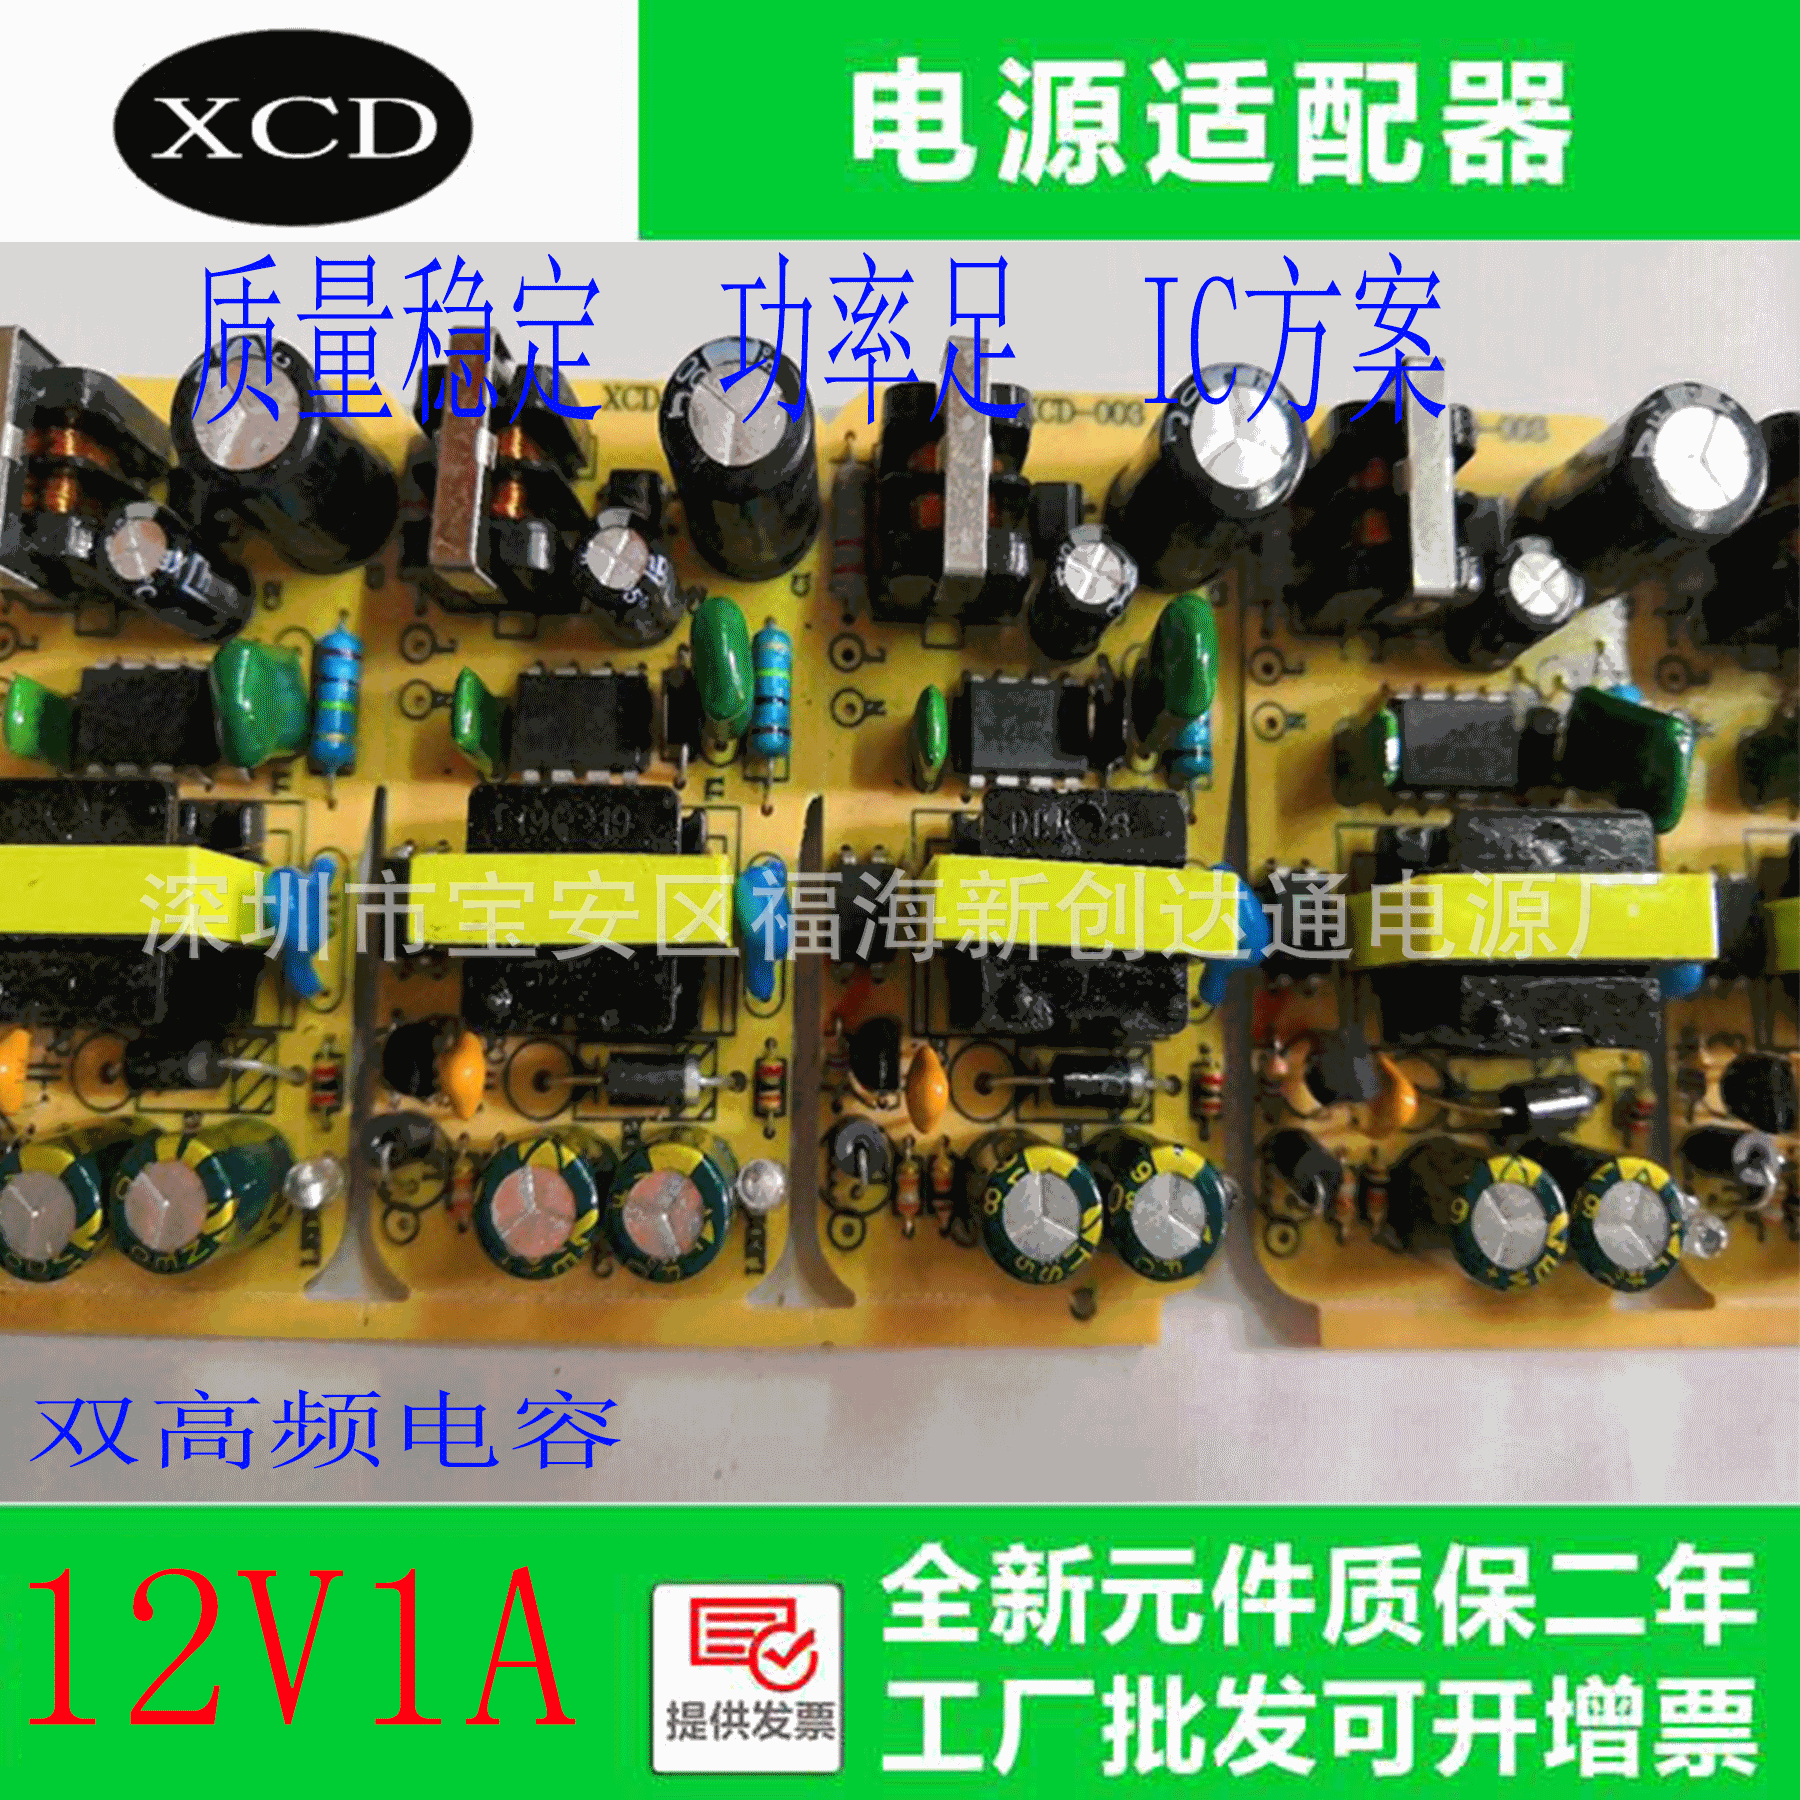 厂家直销12V1A电源适配器 12V1000mA电路板   高效稳定